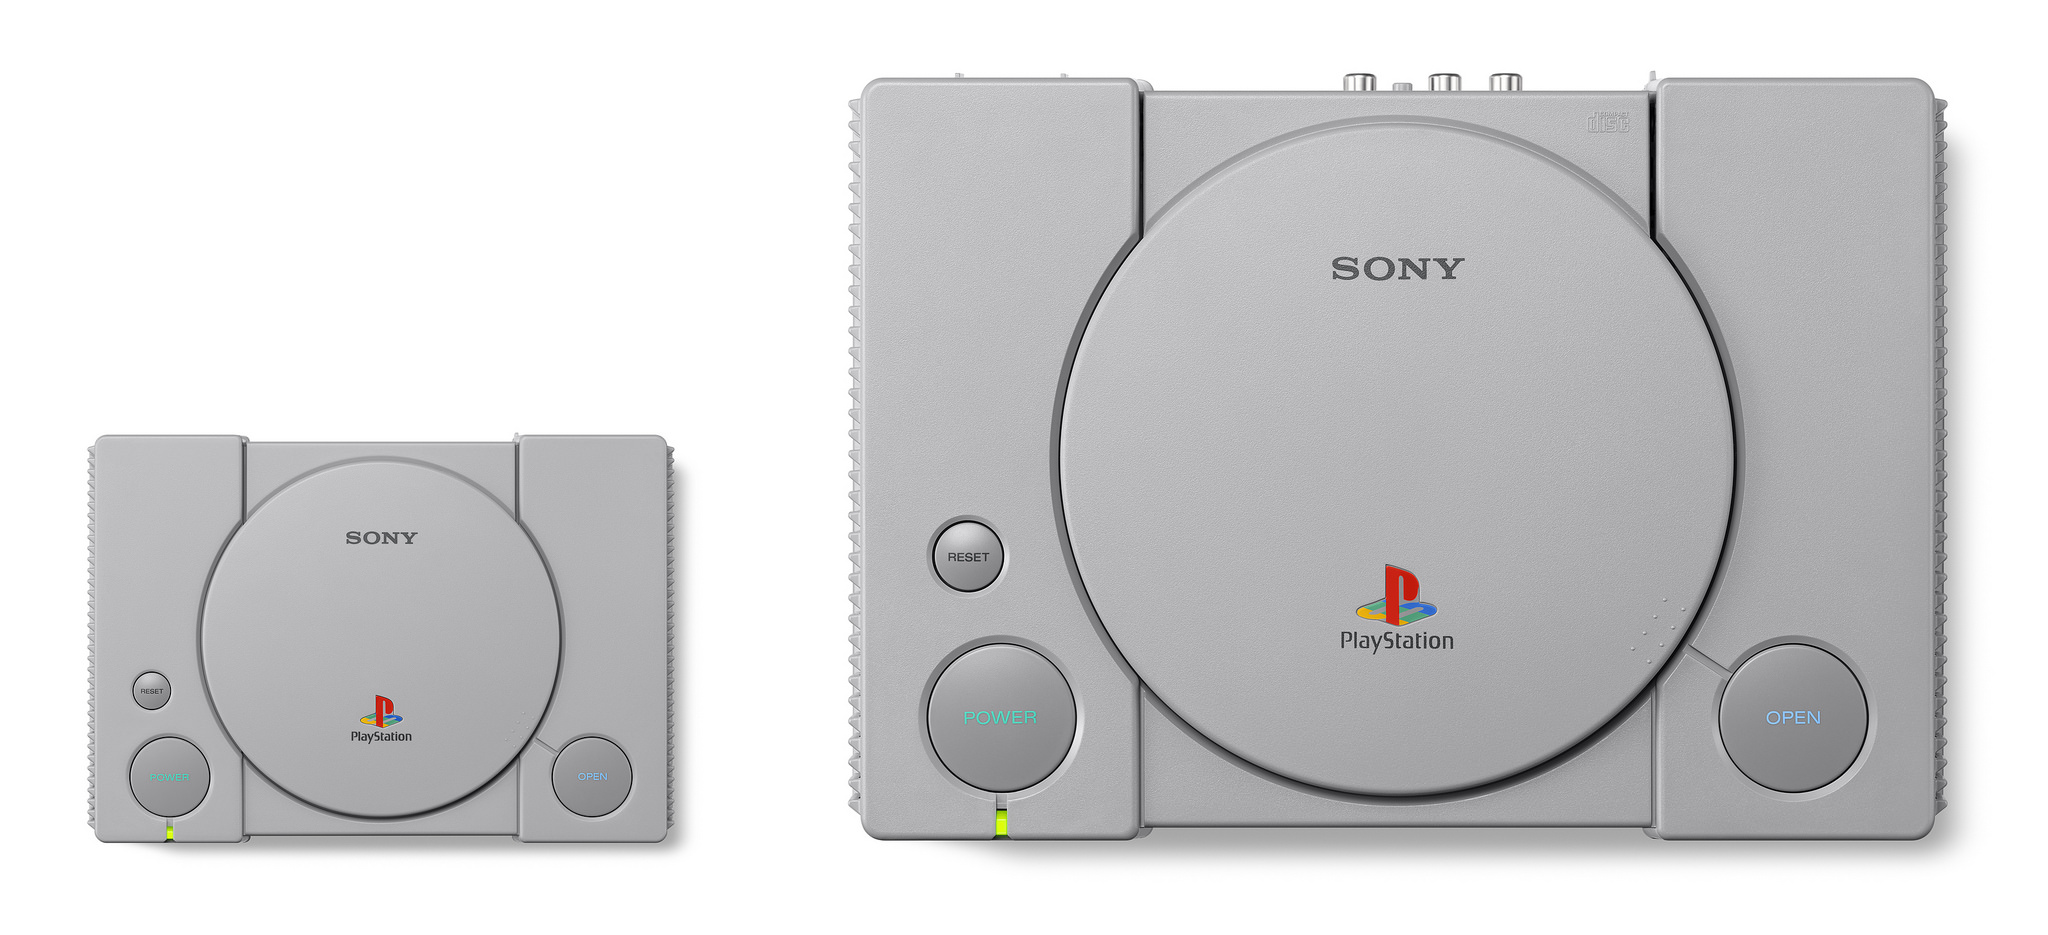 PlayStation Classic diferencia de tamaño